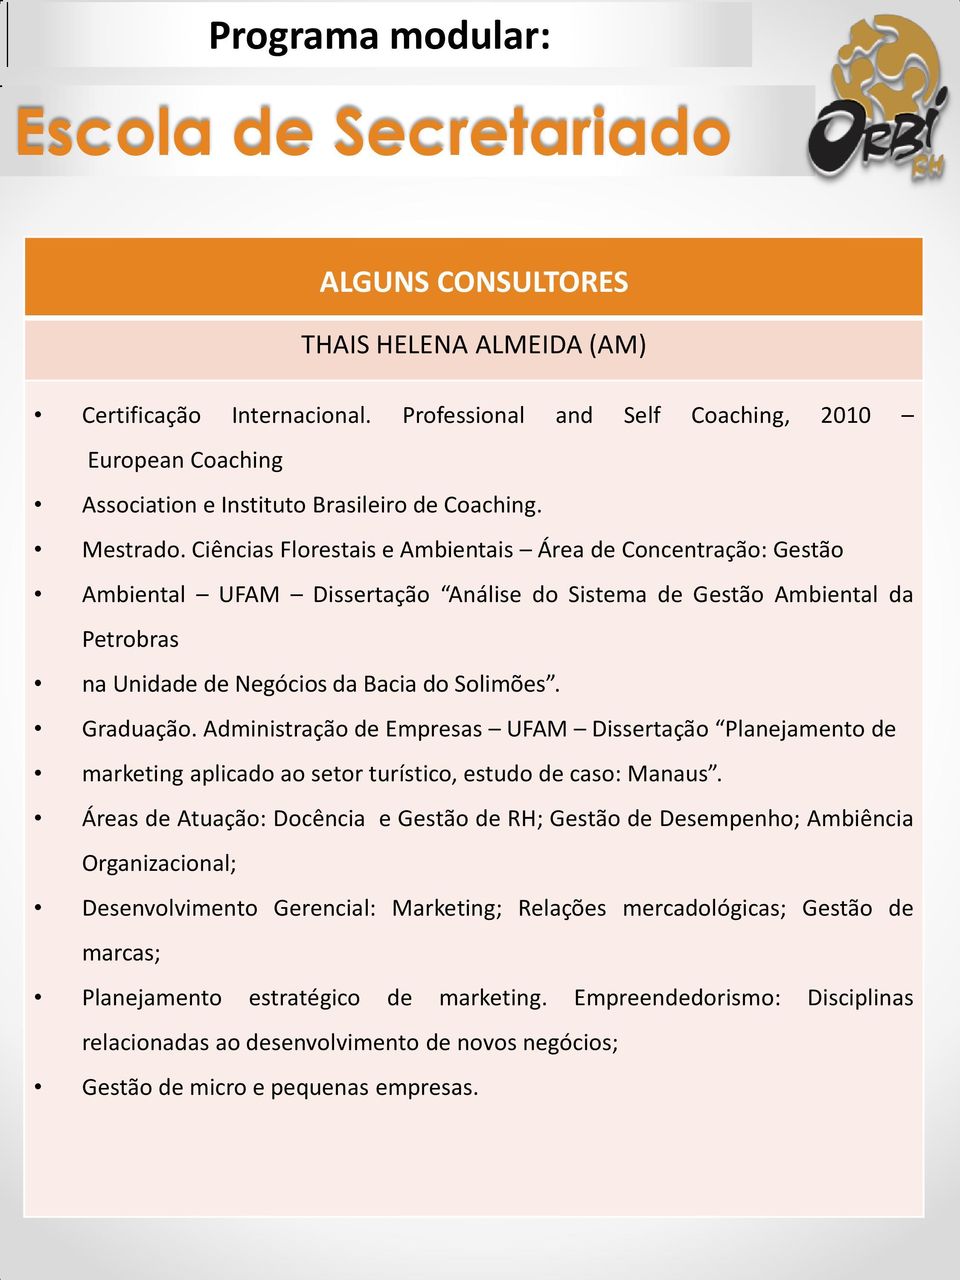 Administração de Empresas UFAM Dissertação Planejamento de marketing aplicado ao setor turístico, estudo de caso: Manaus.